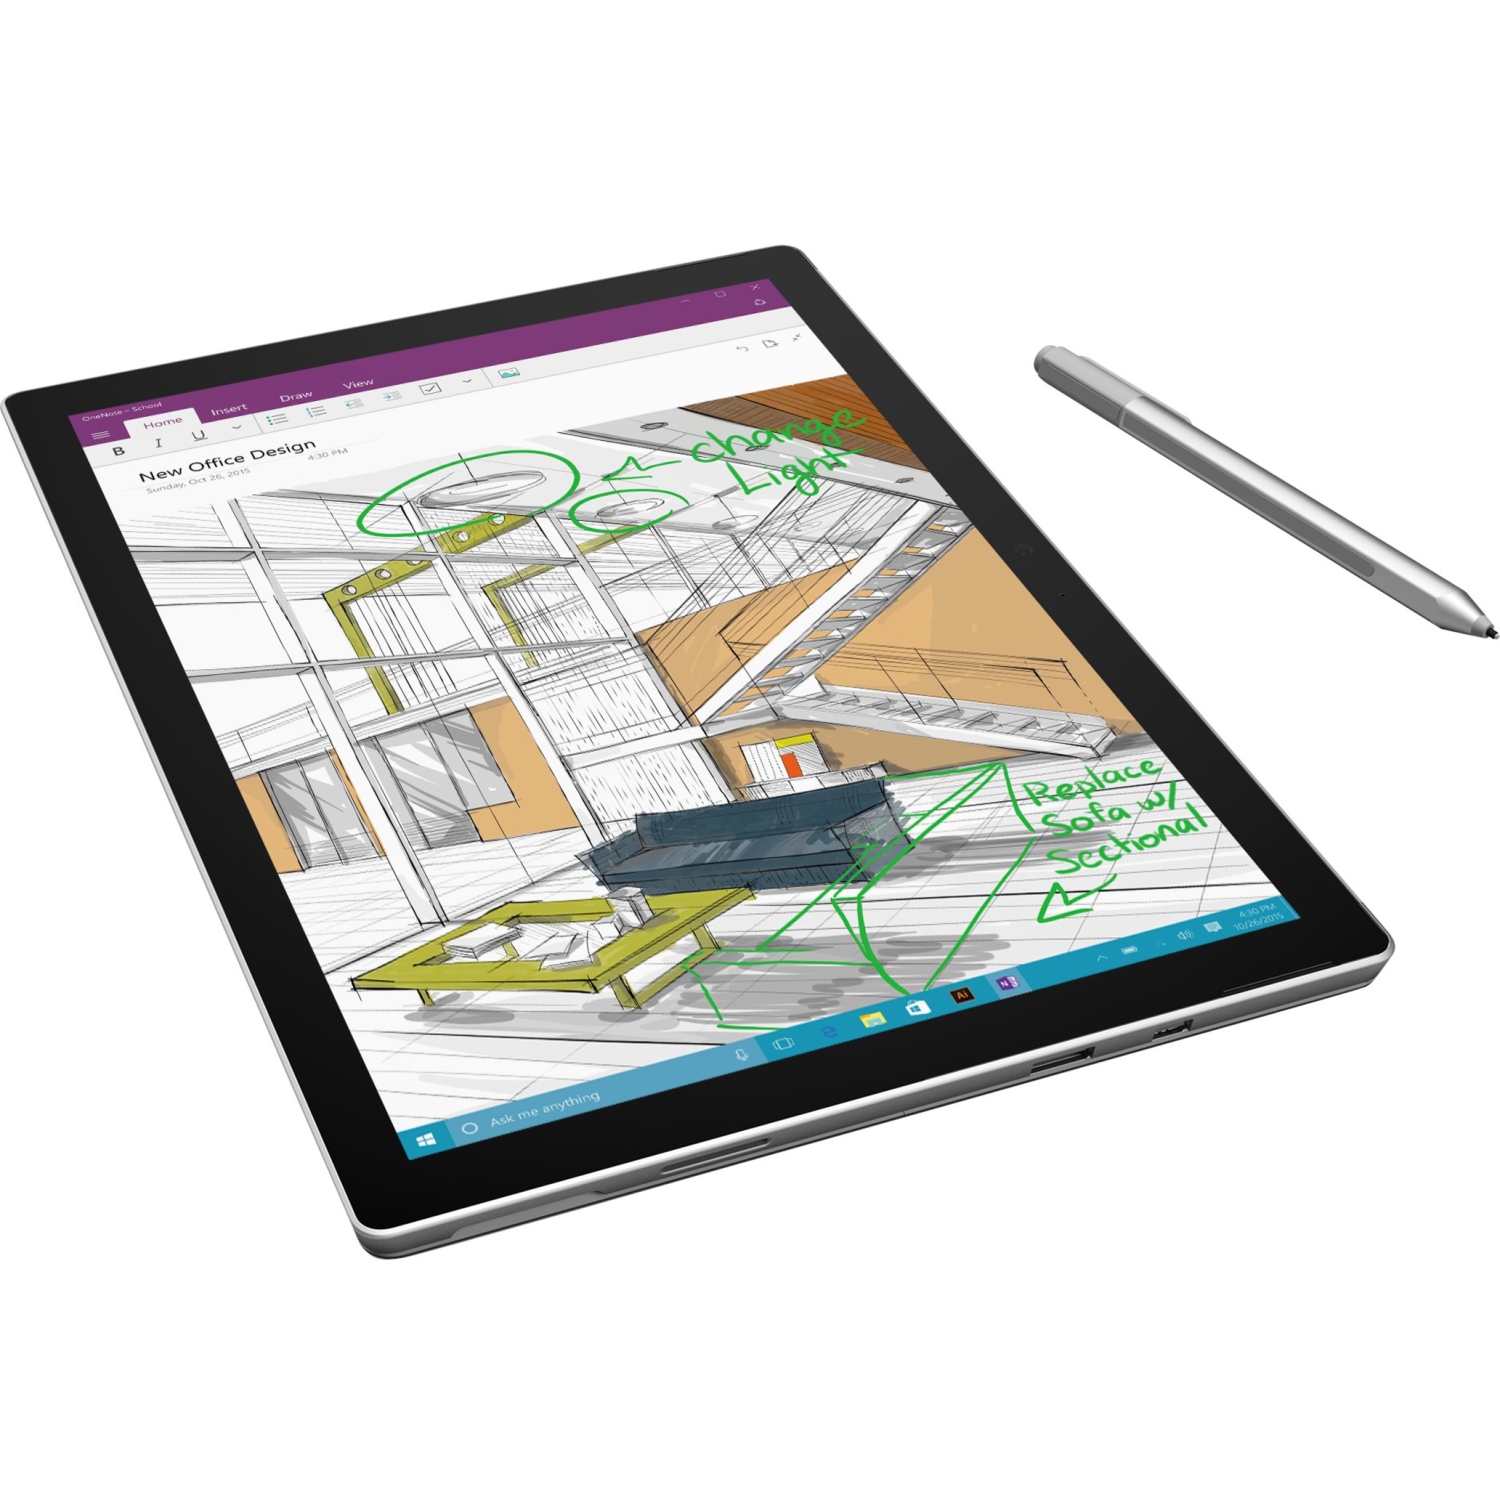 Refurbished (Good) - Microsoft Surface Pro 4 12.3" Touchscreen Tablet Intel i5-6300U 8 GB LPDDR3 256 GB SSD Windows 10 Pro 64-Bit